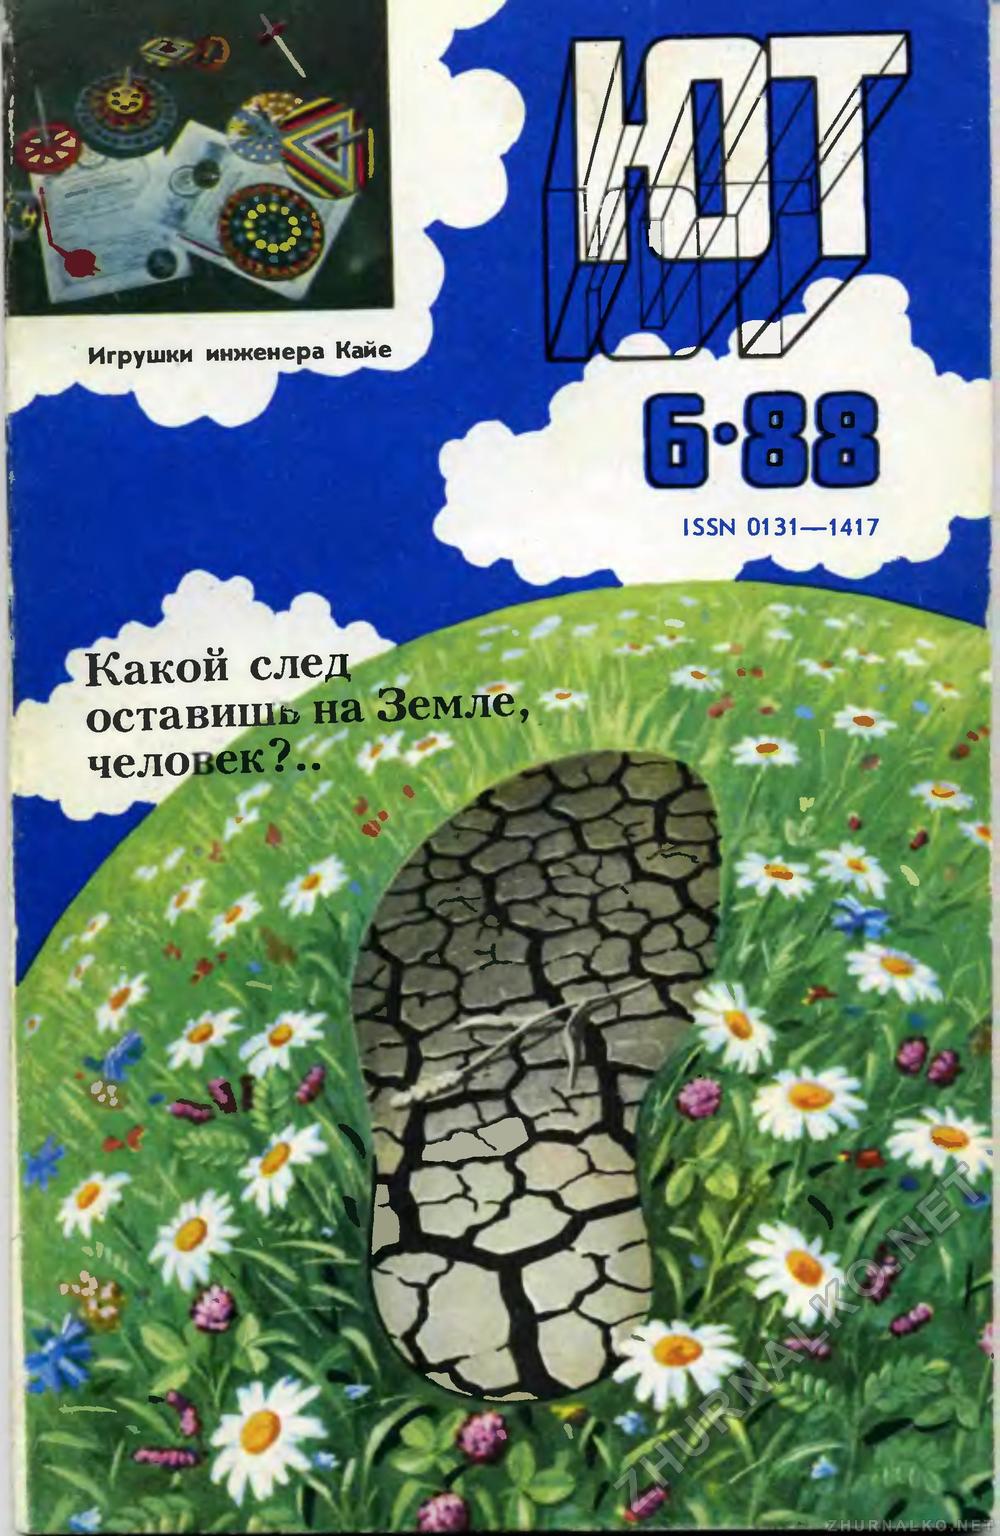   1988-06,  1